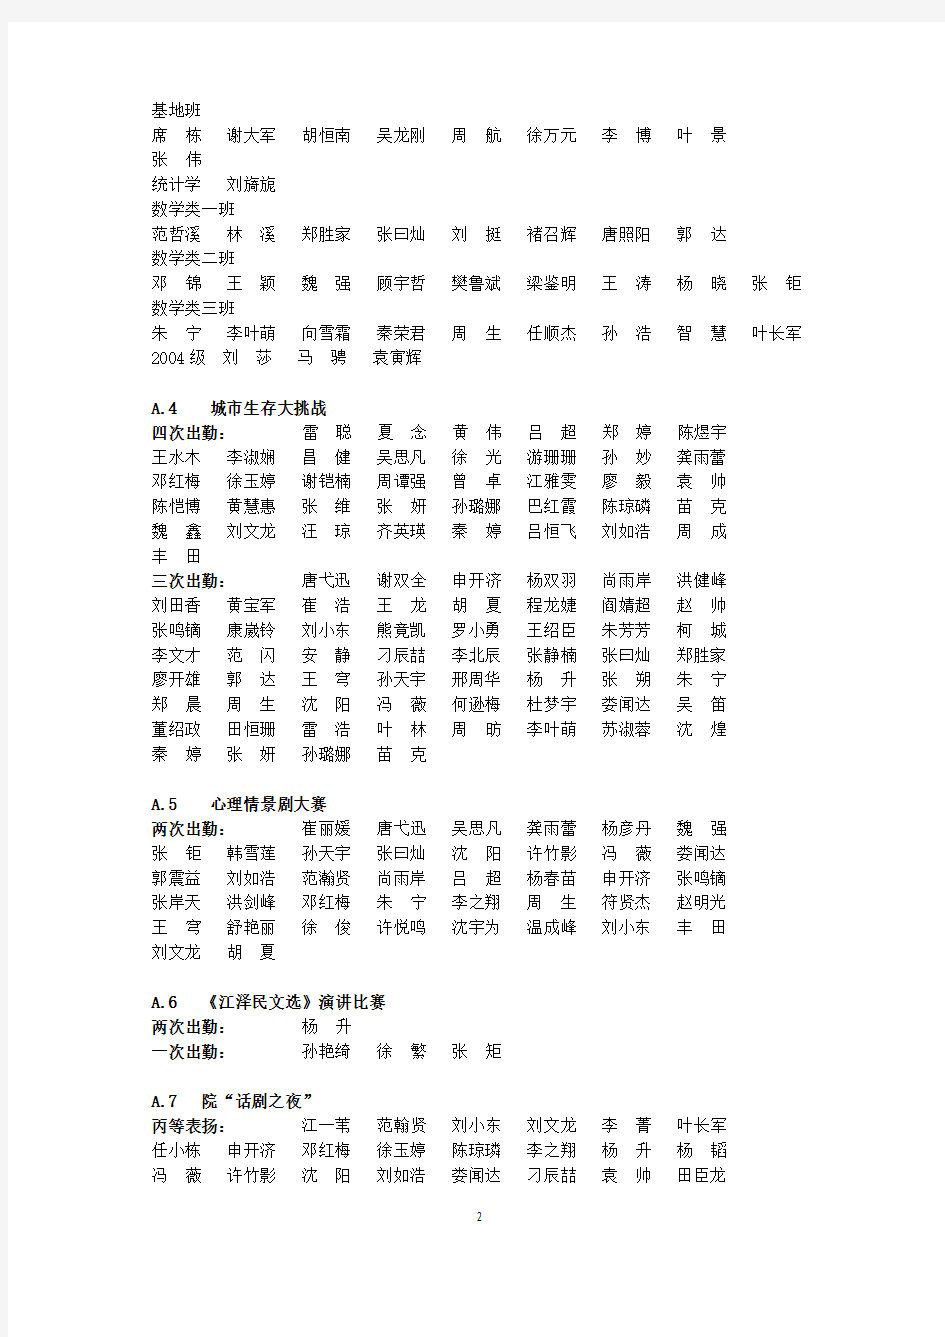 数学与统计学院2002007年表扬-武汉大学数学与统计学院